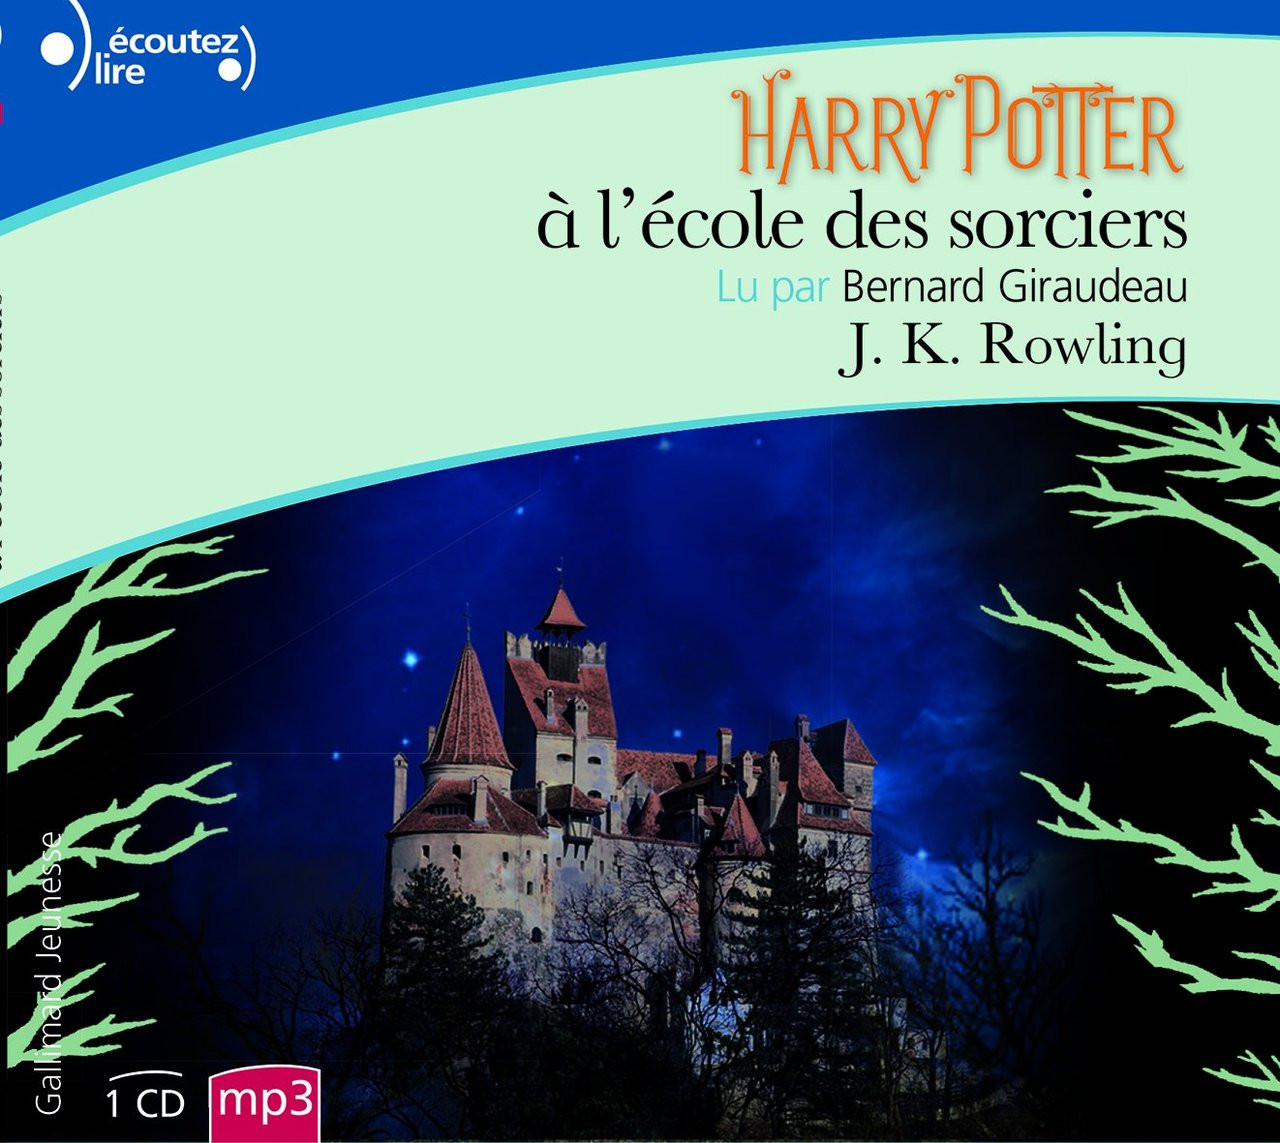 HARRY POTTER A L'ECOLE DES SORCIERS (French Edition)